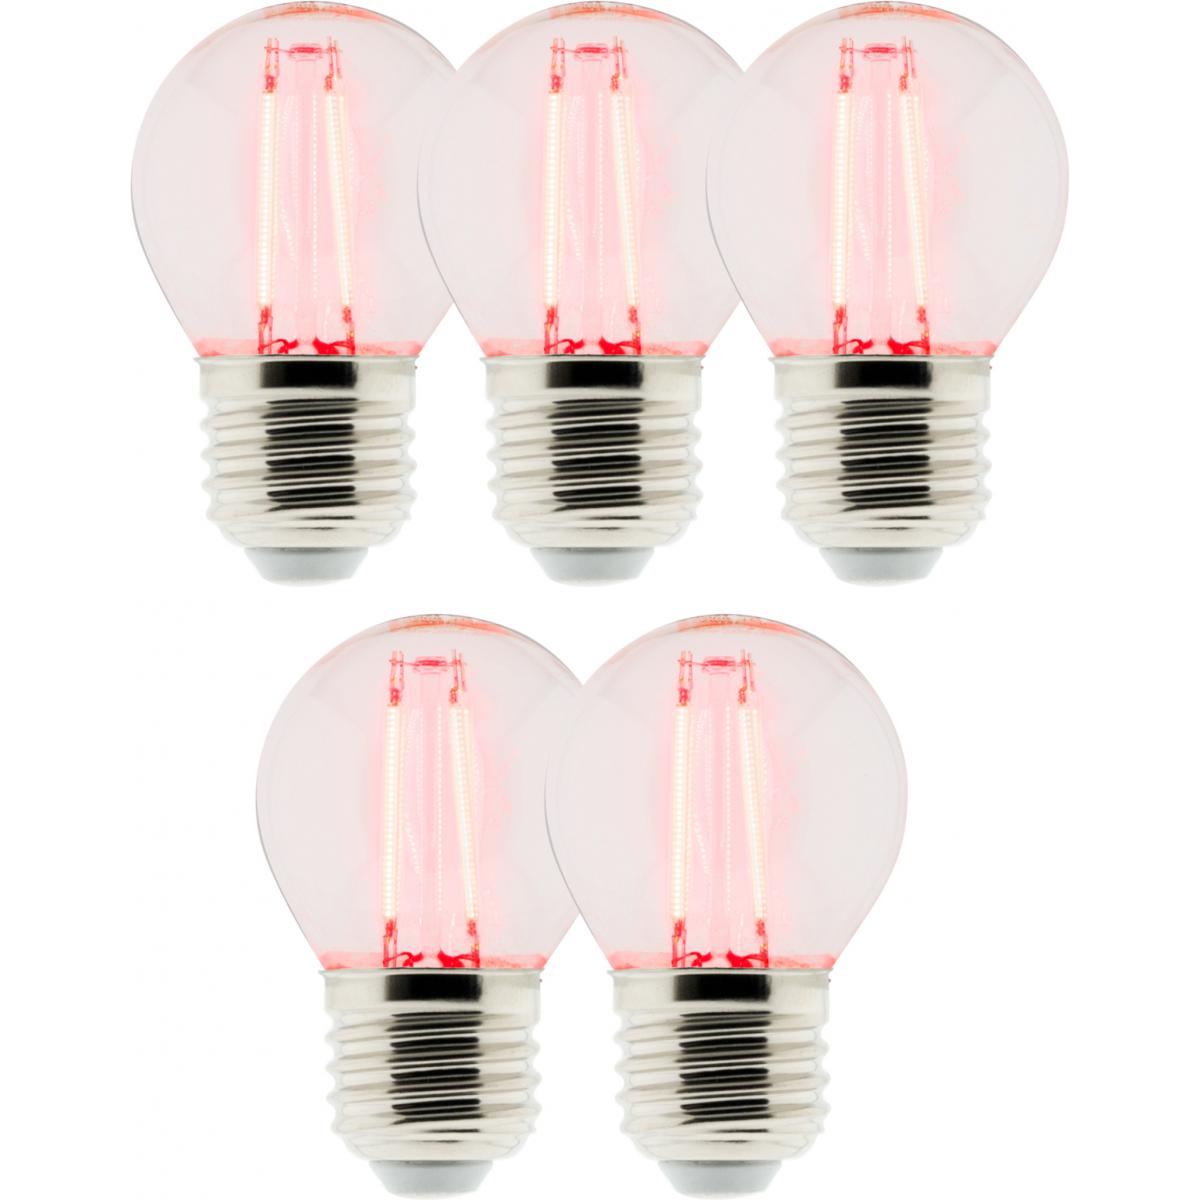 Elexity - Lot de 5 Ampoules LED Déco filament rouge 3W E27 Sphérique - Ampoules LED